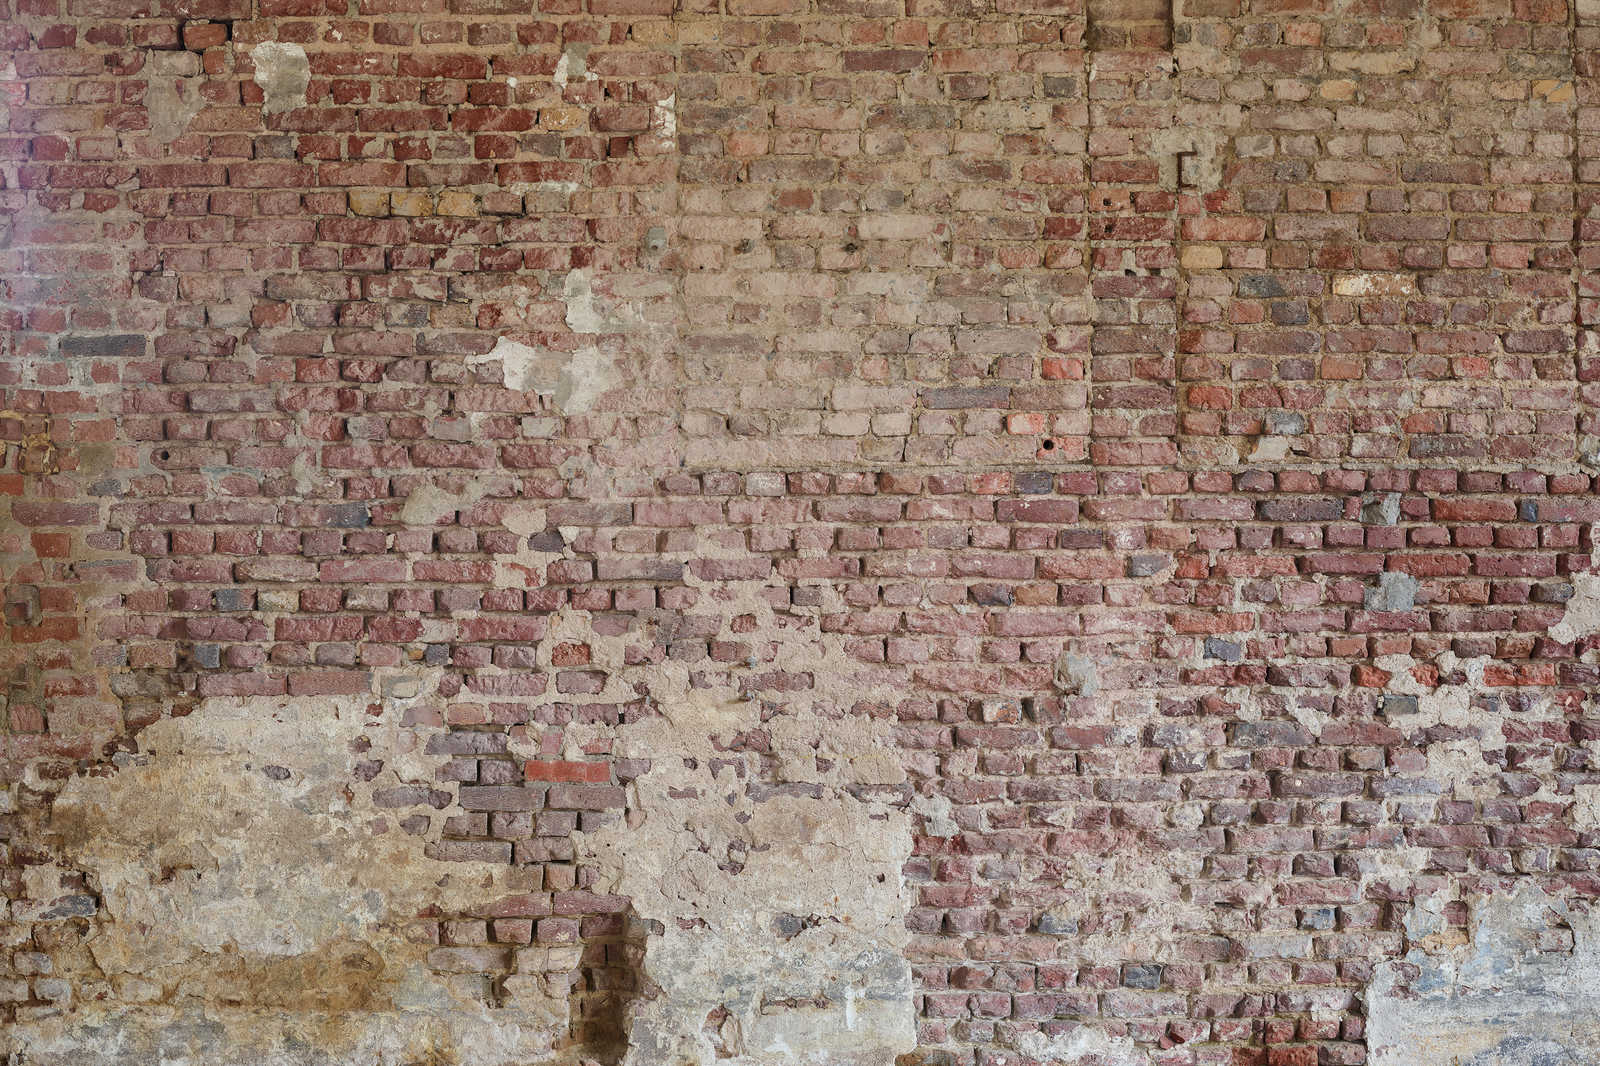             Leinwandbild mit Ziegelsteinwand im Vintagestil – 0,90 m x 0,60 m
        